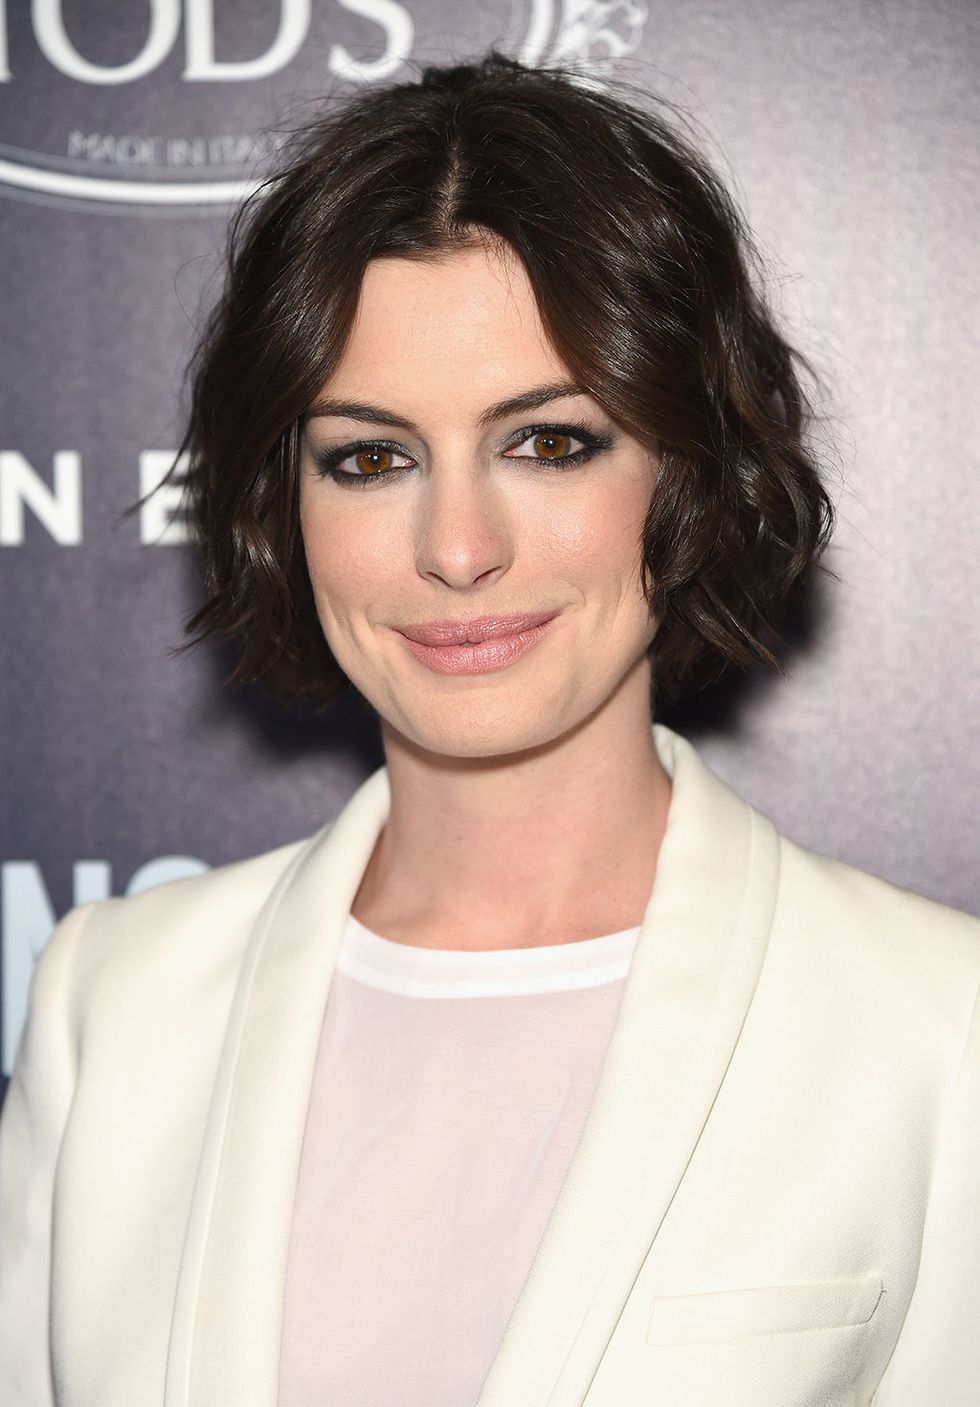 El short bob rizado es el peinado ideal para las chicas con el rostro triangular como el de la actriz Anne Hathaway